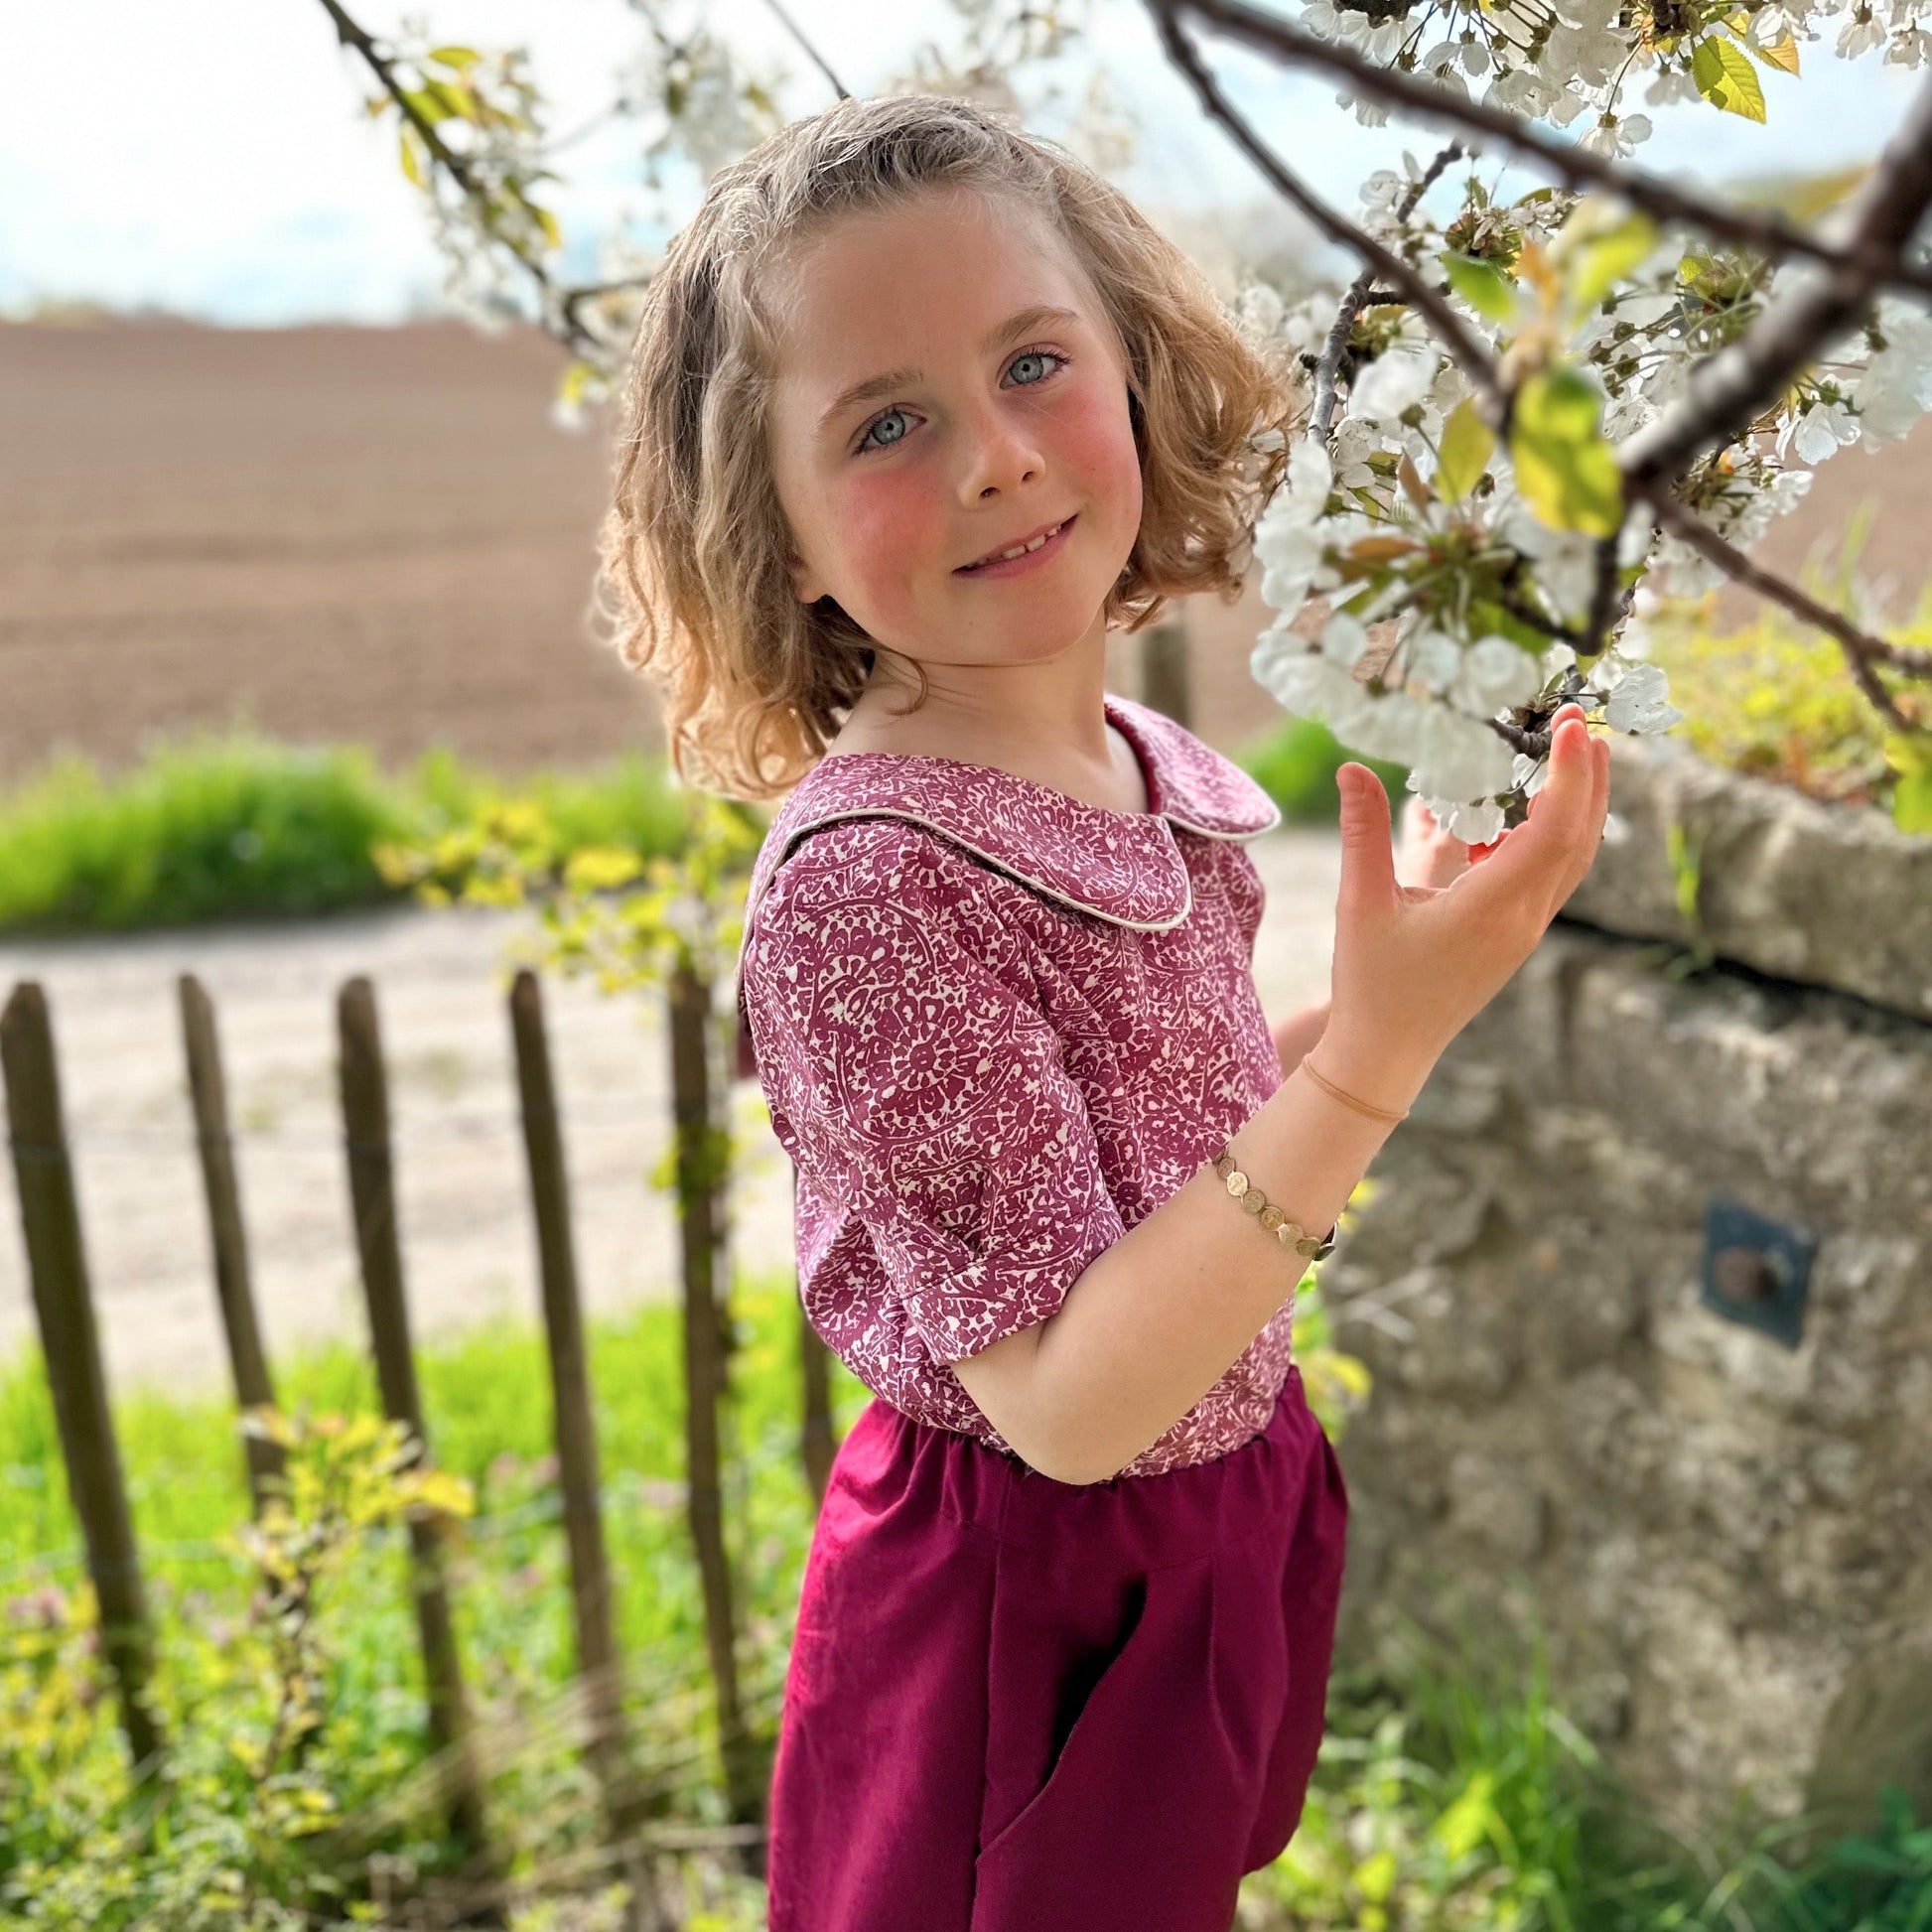 Couture enfant : les jolis patrons gratuits pour la garde-robe de printemps